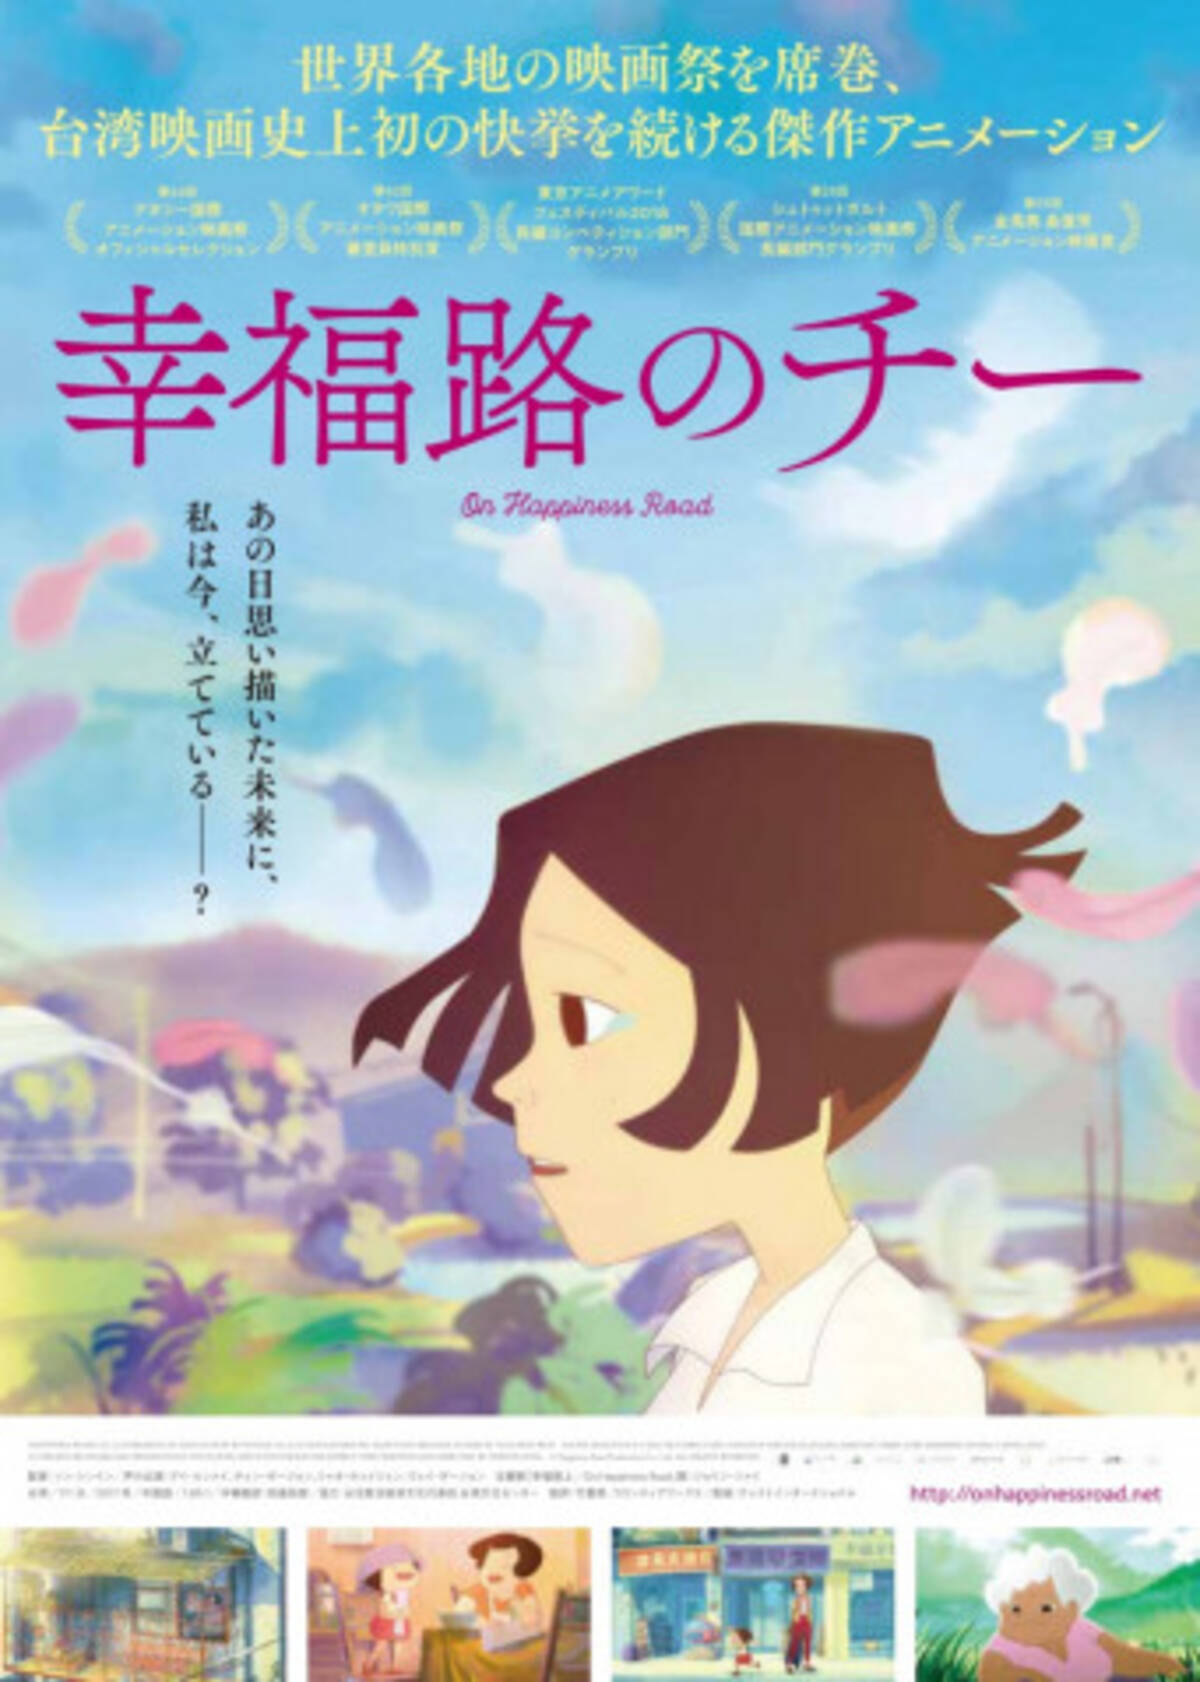 大人が泣ける 台湾発のアニメ 幸福路のチー 日本語吹替版ダイジェスト映像が解禁 19年11月22日 エキサイトニュース